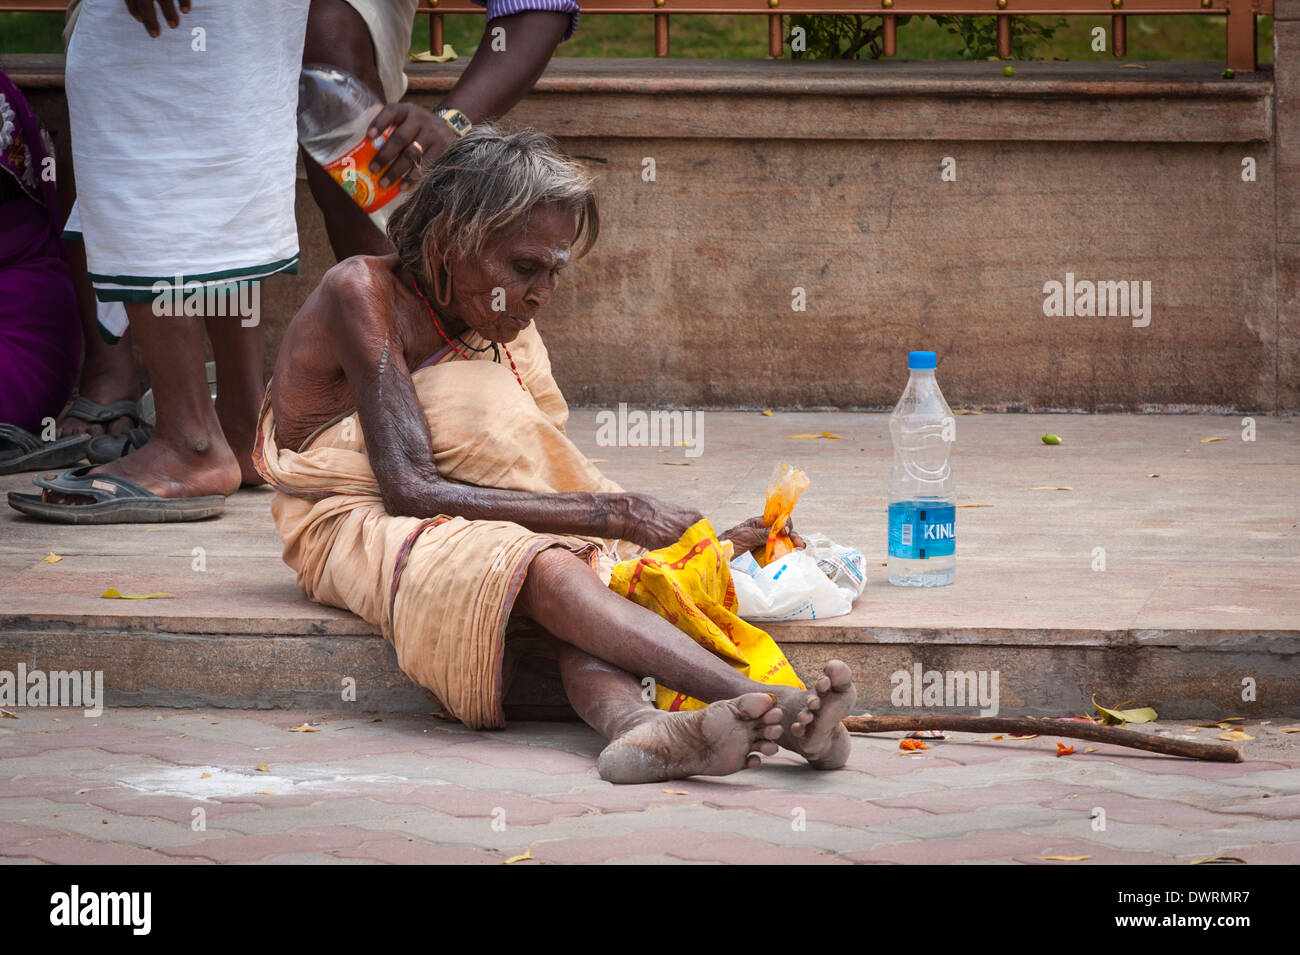 Le Sud de l'Inde du Sud Tamil Nadu Madurai temple de Minakshi Sundareshvara hindou Shiva gris défilé femme aux cheveux gris femme assise Banque D'Images